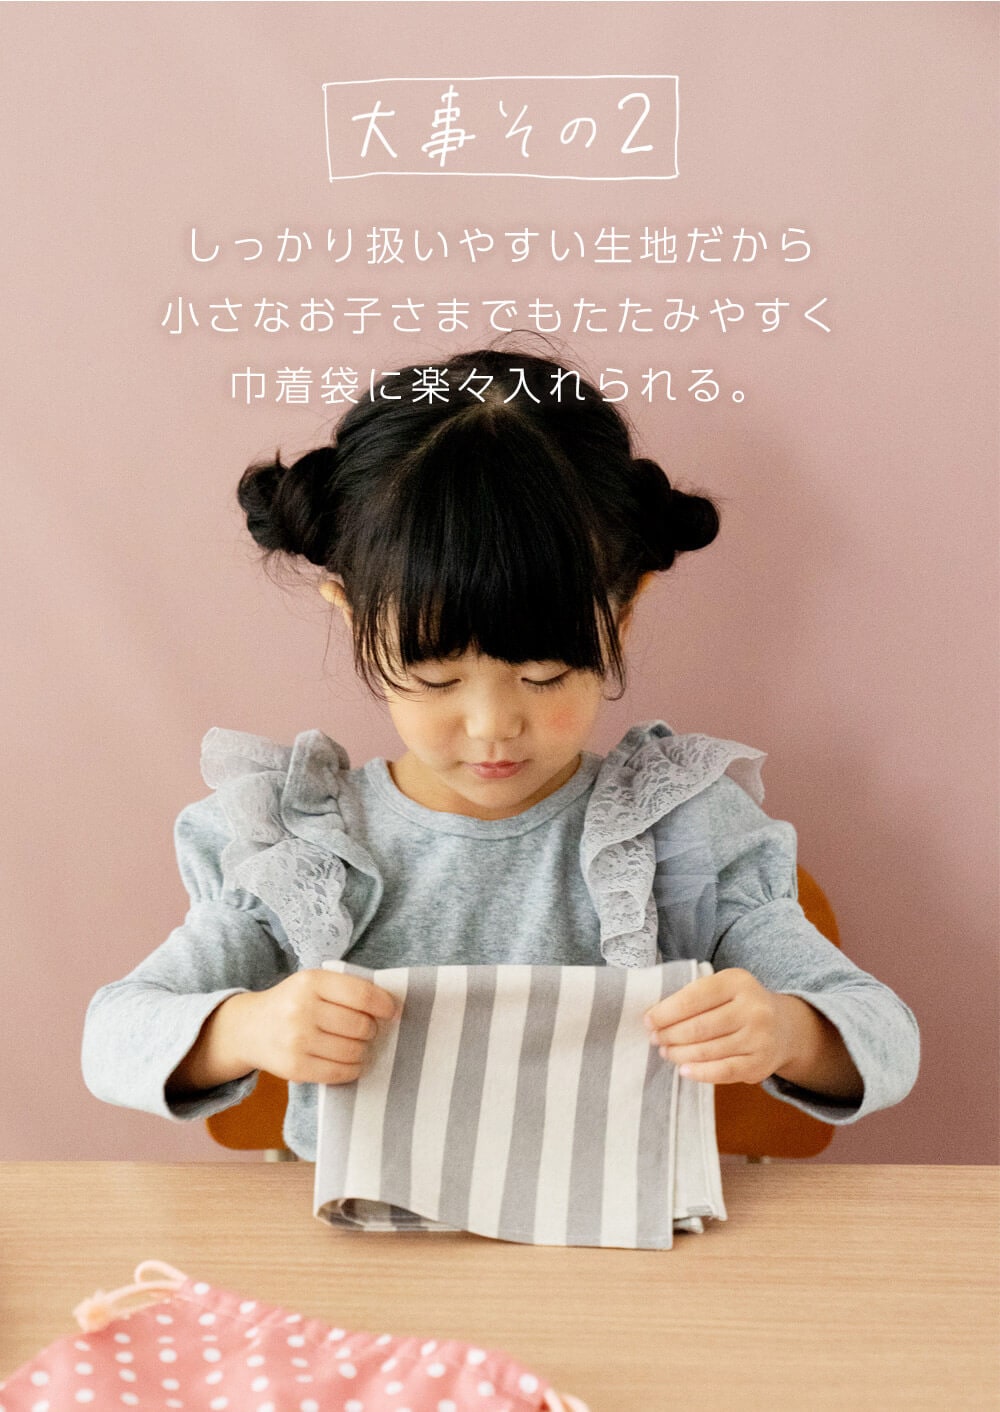 給食マット 給食ナフキン / Bタイプ32×47 ランチョンマット 卒園記念品 日本製 DORACO FIRST (ドラコファースト)  ブランド-DORACOFIRST